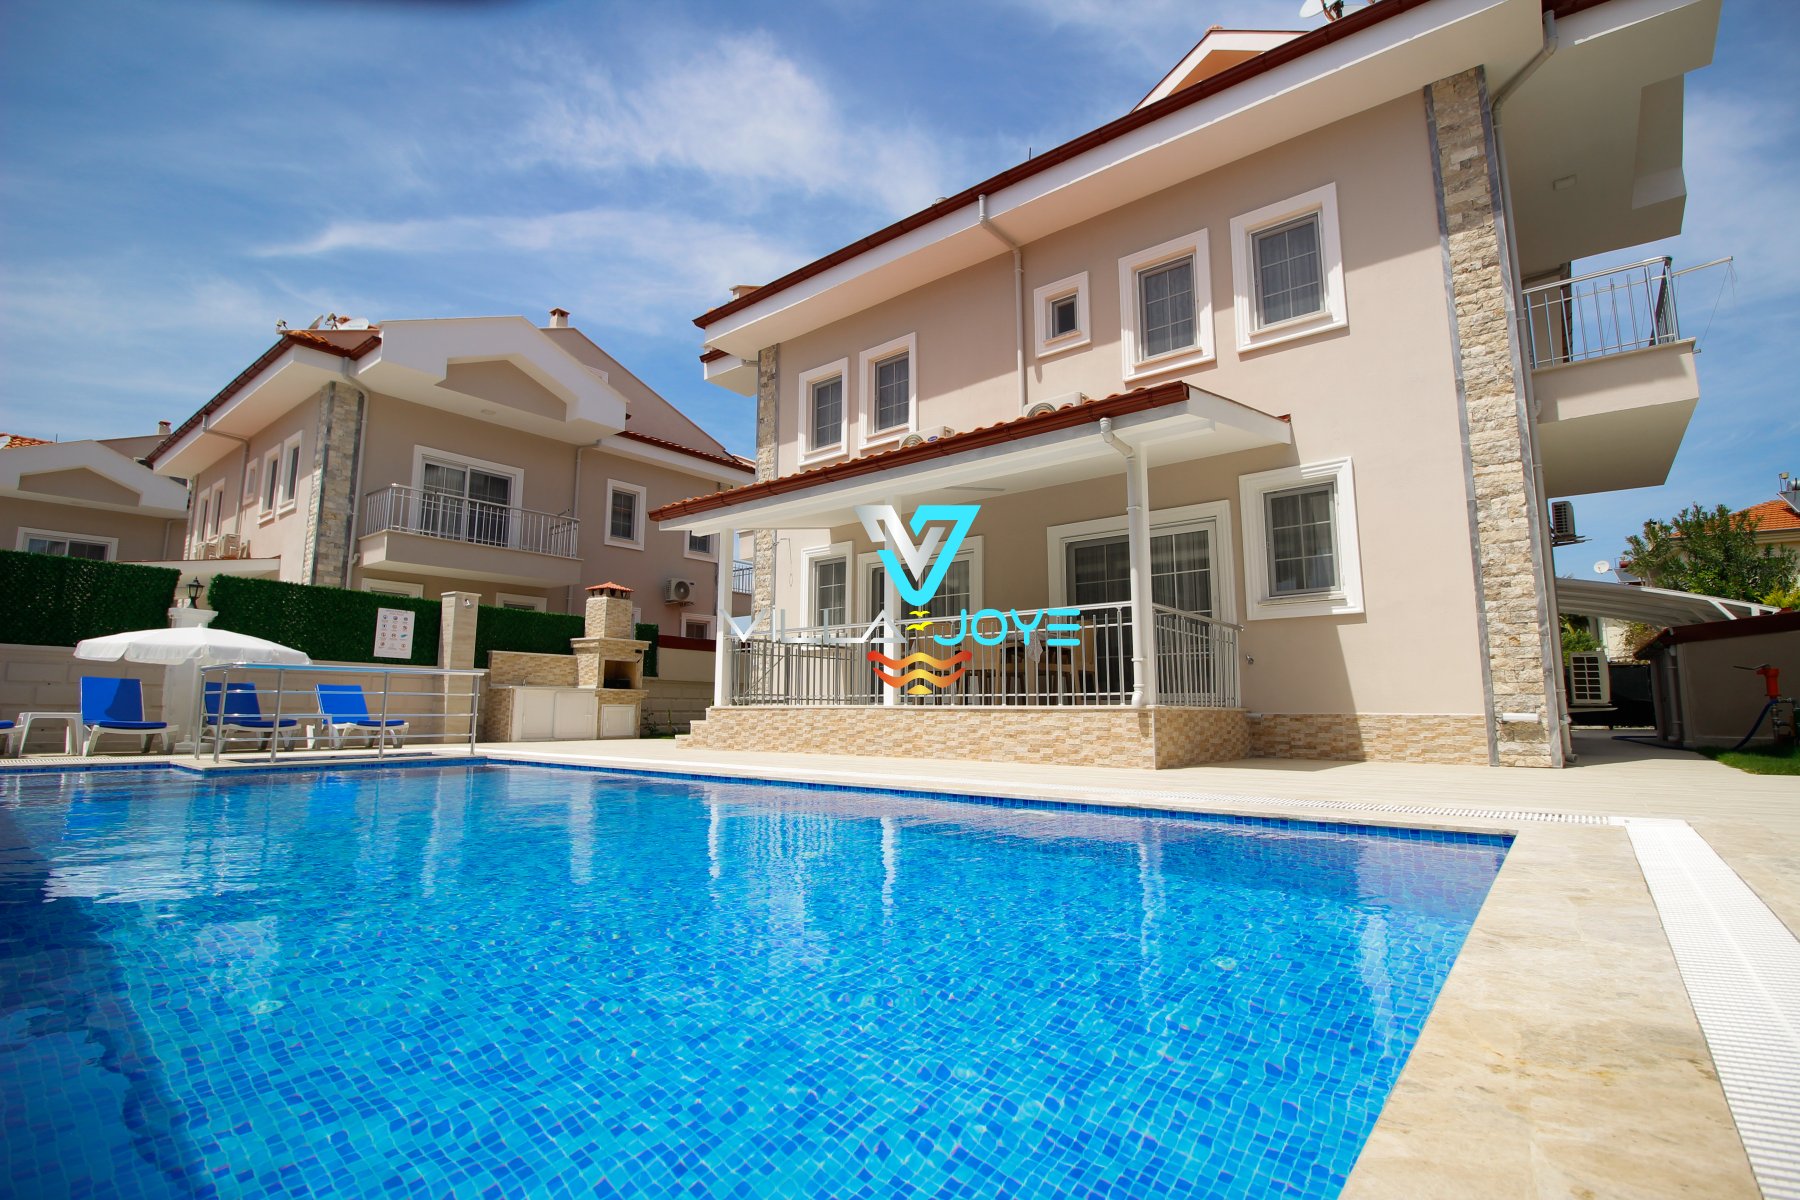 Rental Villa in Dalyan, Muğla - No:35-1